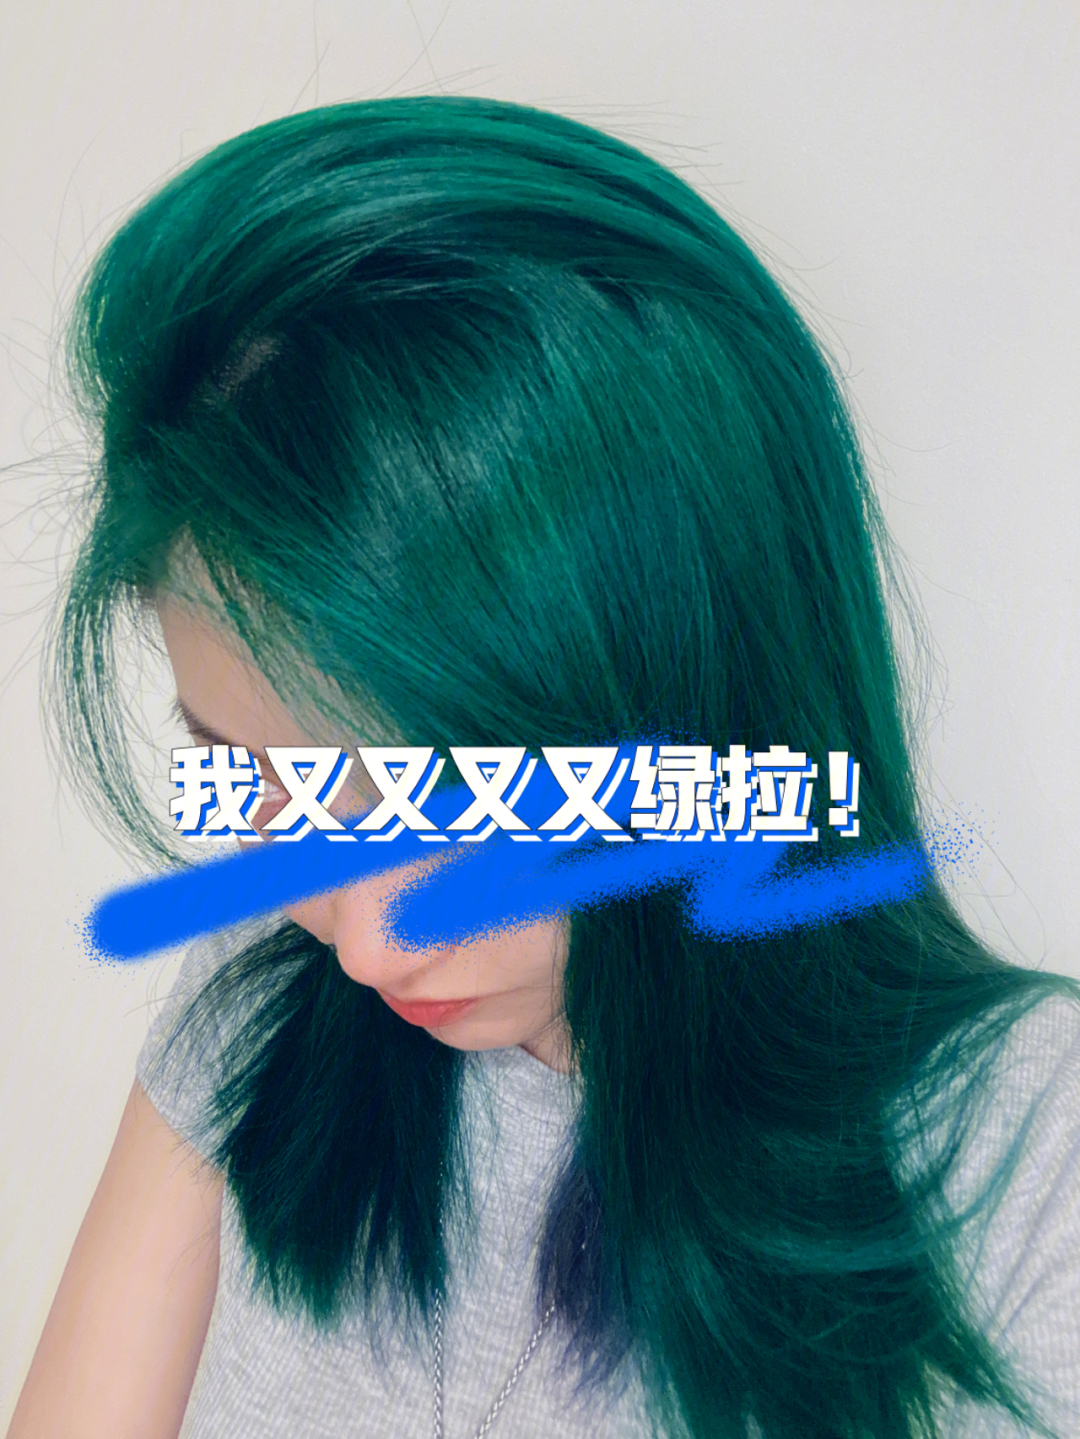 绿色头发是我永远的爱